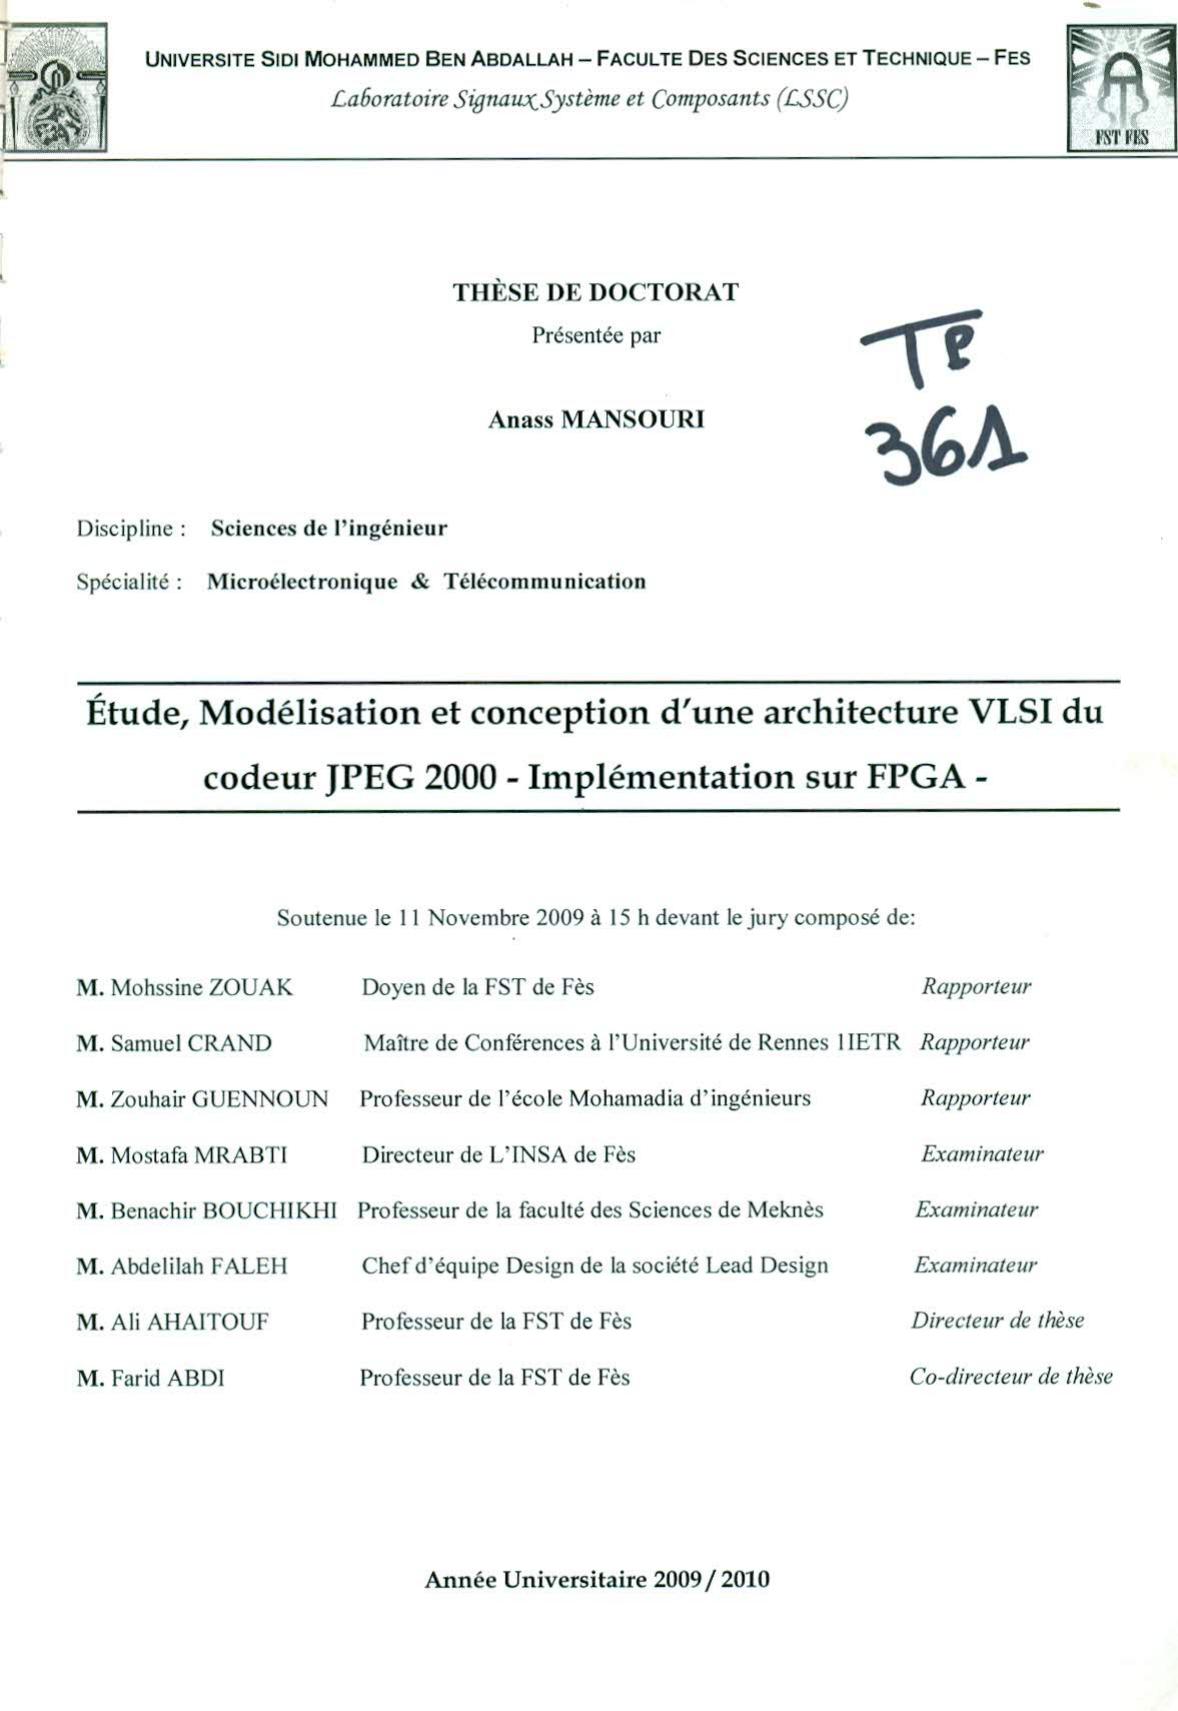 Etude, modélisation et conception d'une architecture VLSI du codeur PEG 2000 - Implémentation sur FPGA